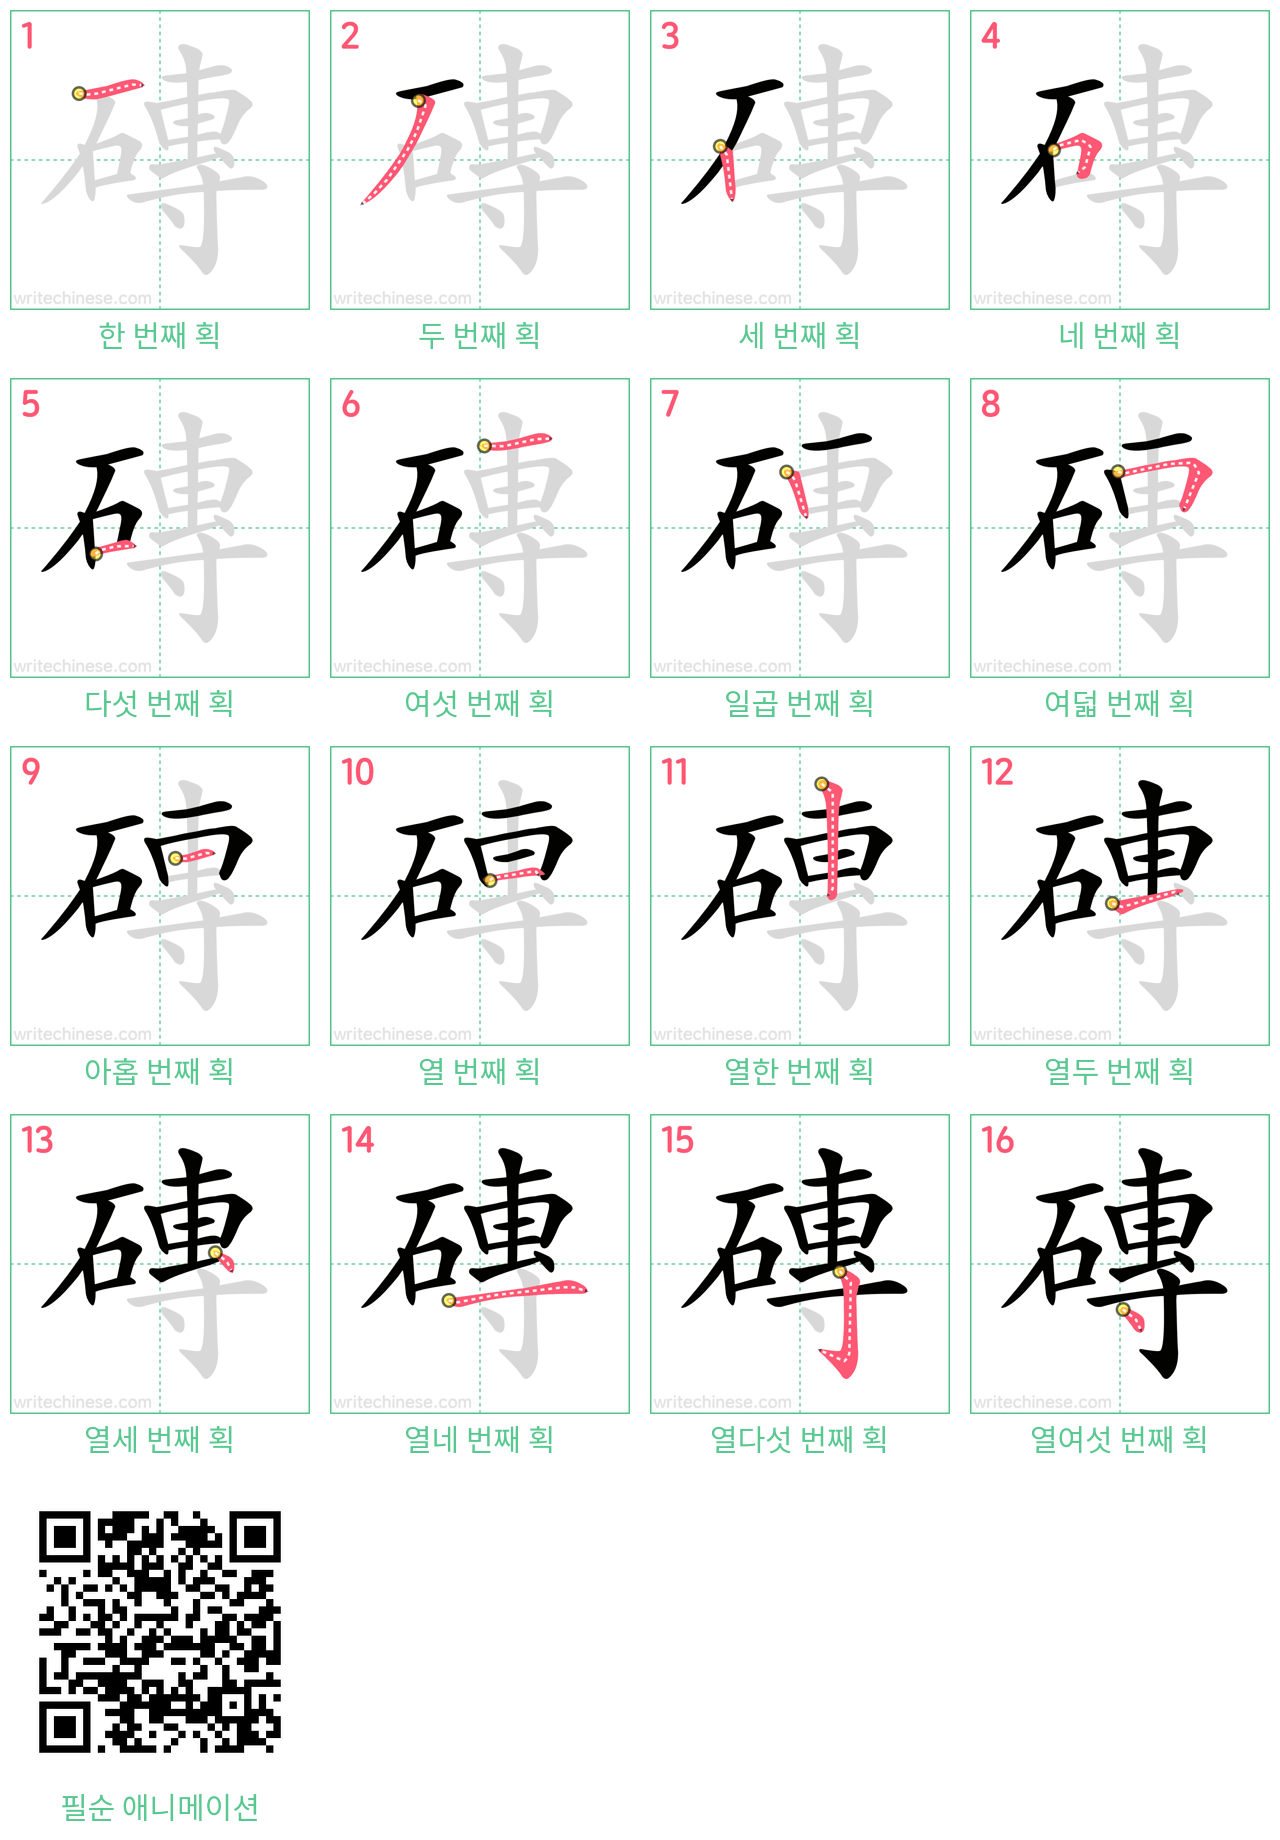 磚 step-by-step stroke order diagrams